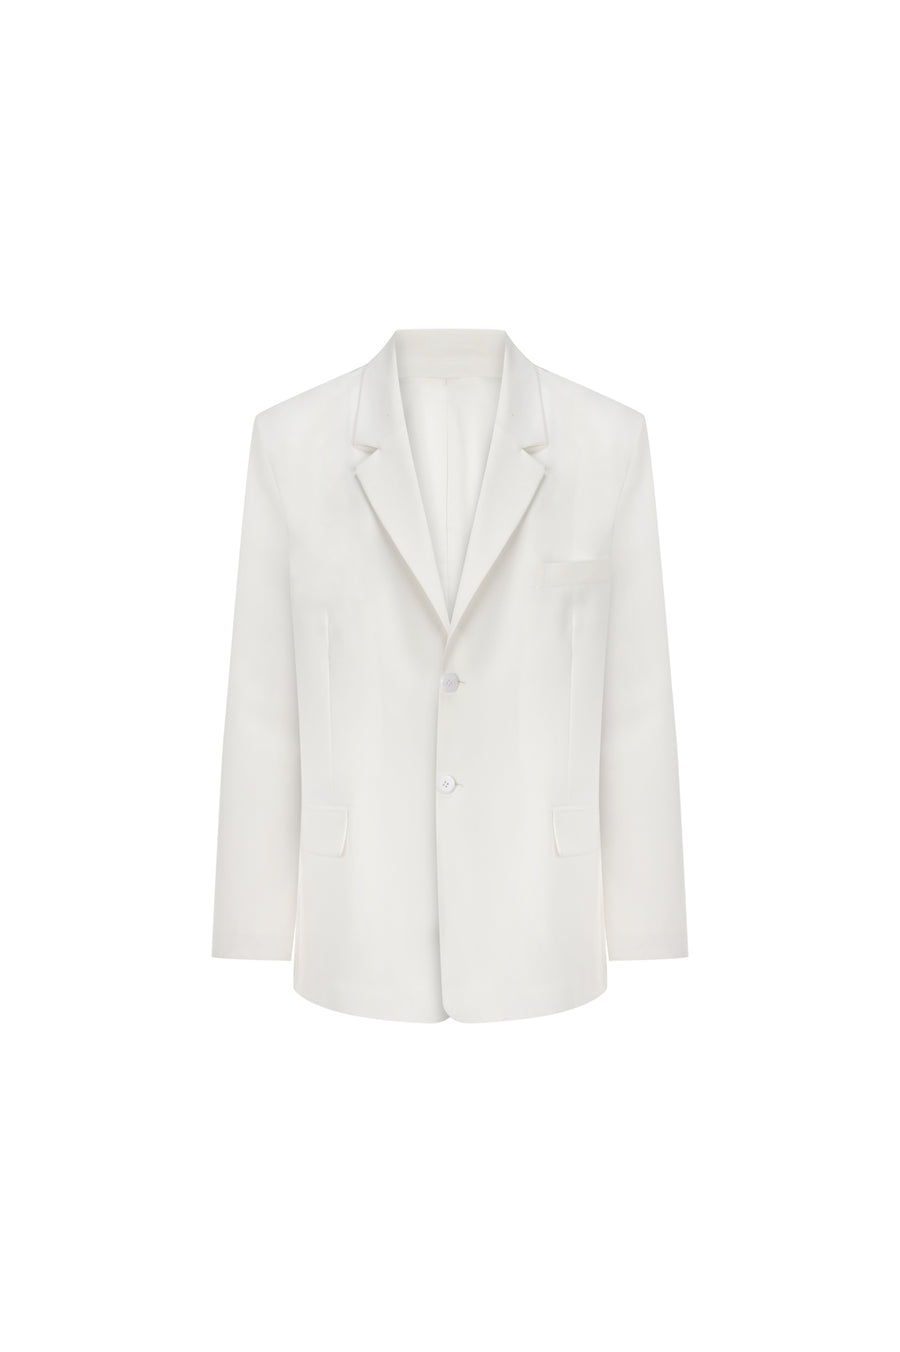 The Luc ivory blazer jacket